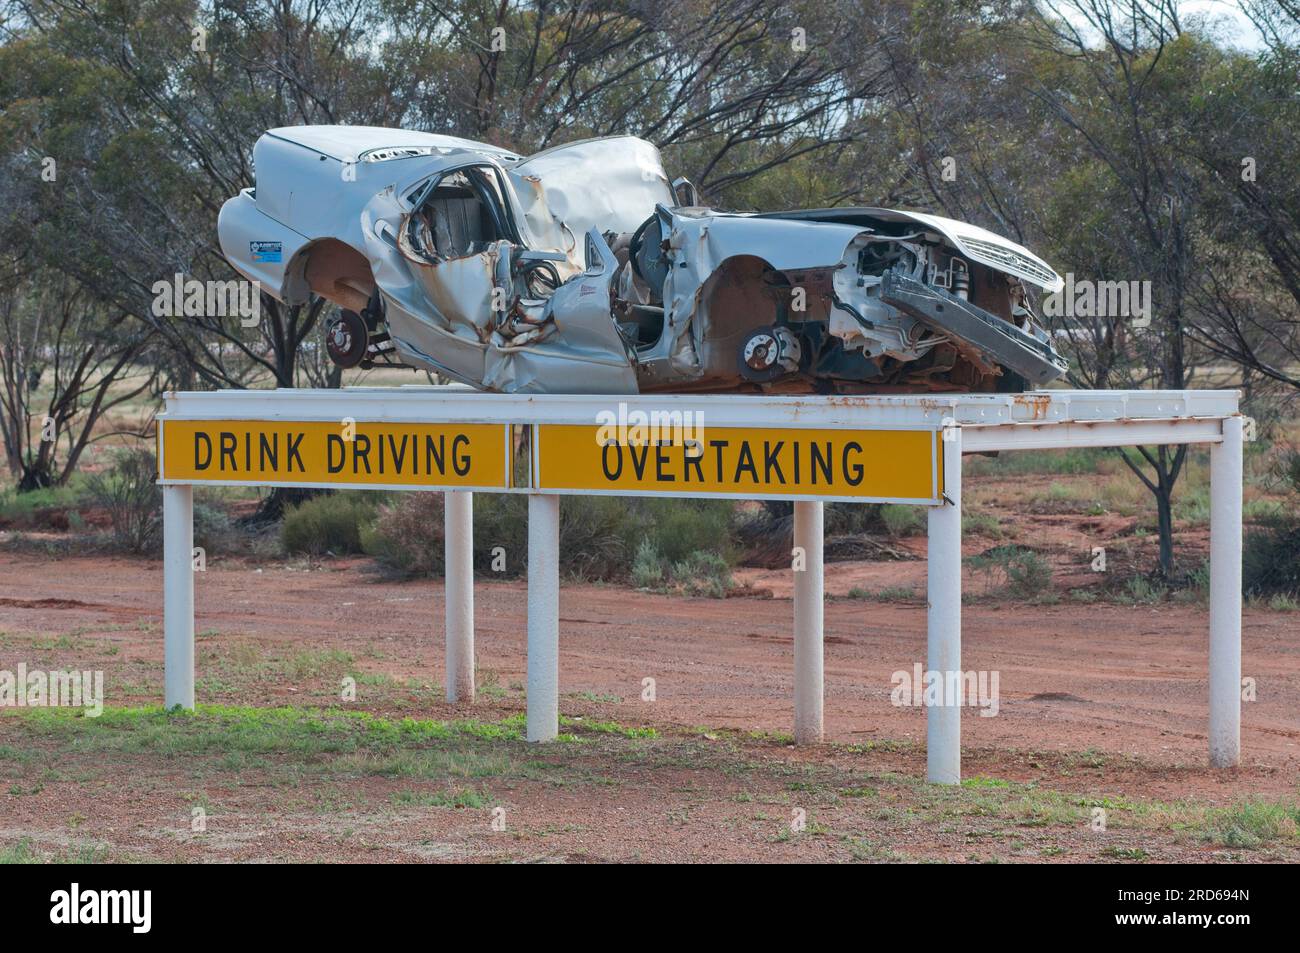 Eine australische Kampagne zur Straßenverkehrssicherheit, in der Autowracks gezeigt werden, um ein Sicherheitsbewusstsein für die Gefahren von Geschwindigkeitsübertretungen und Trunkenheit am Steuer zu schaffen Stockfoto